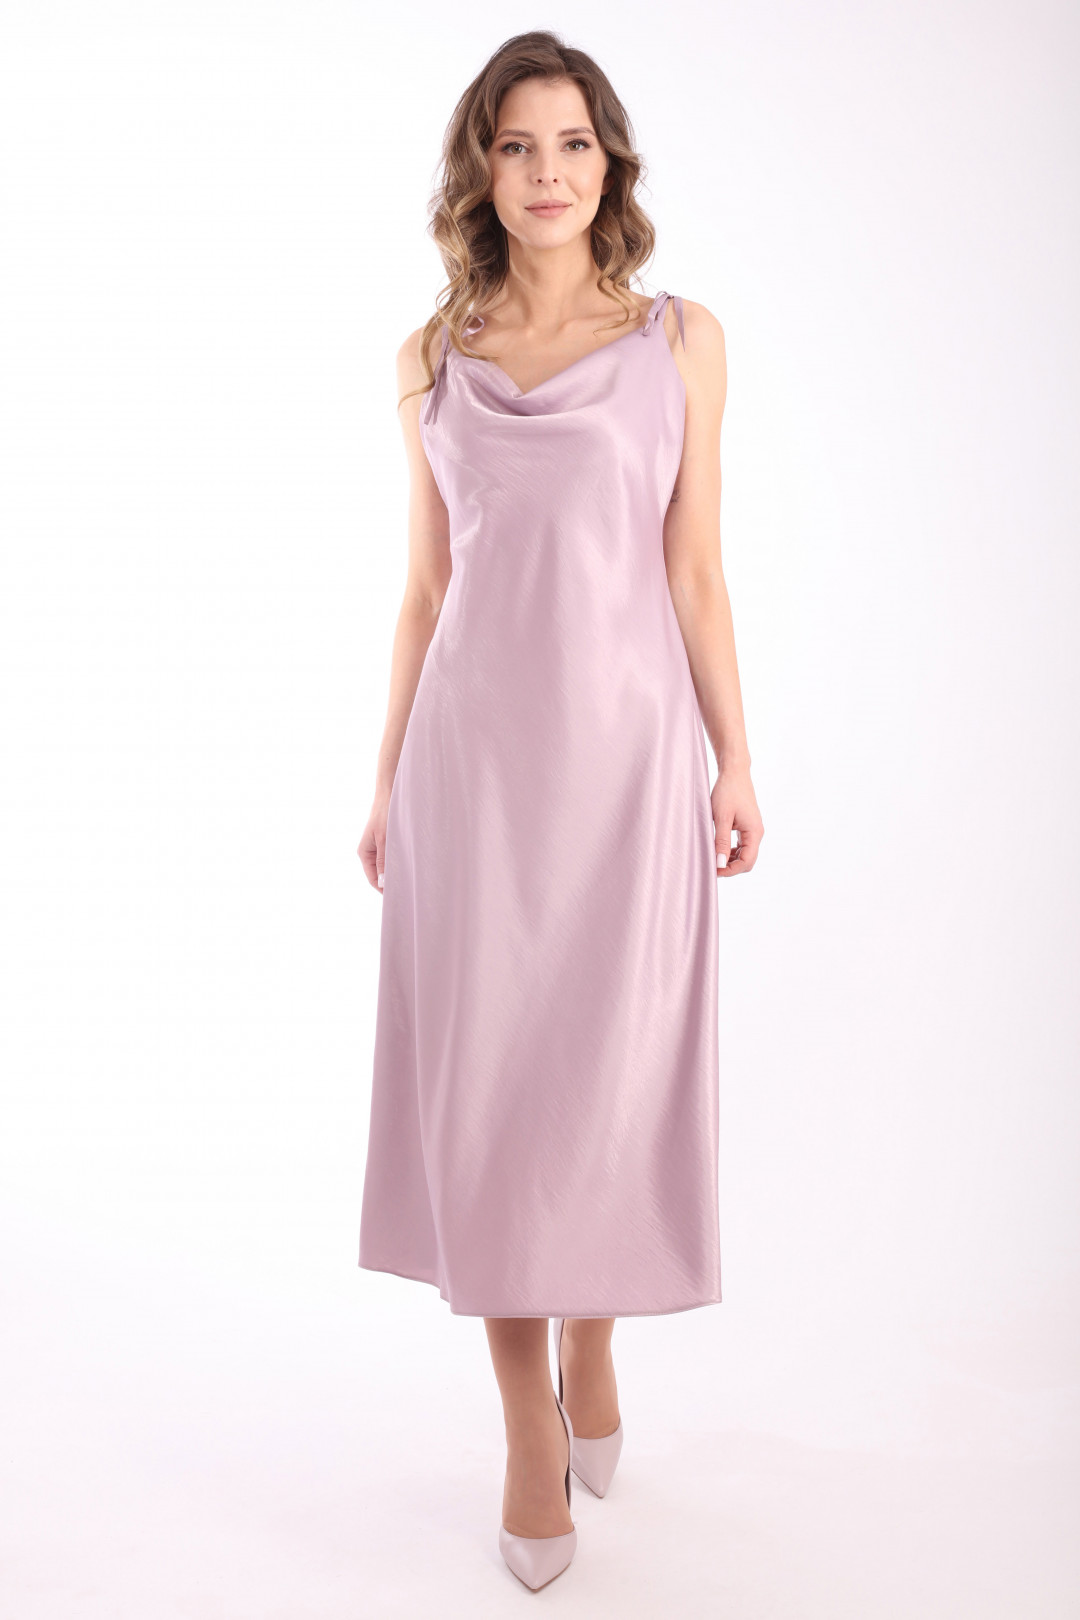 Платье Лаборатория Моды ВИ 3080 Лавандово-розовый